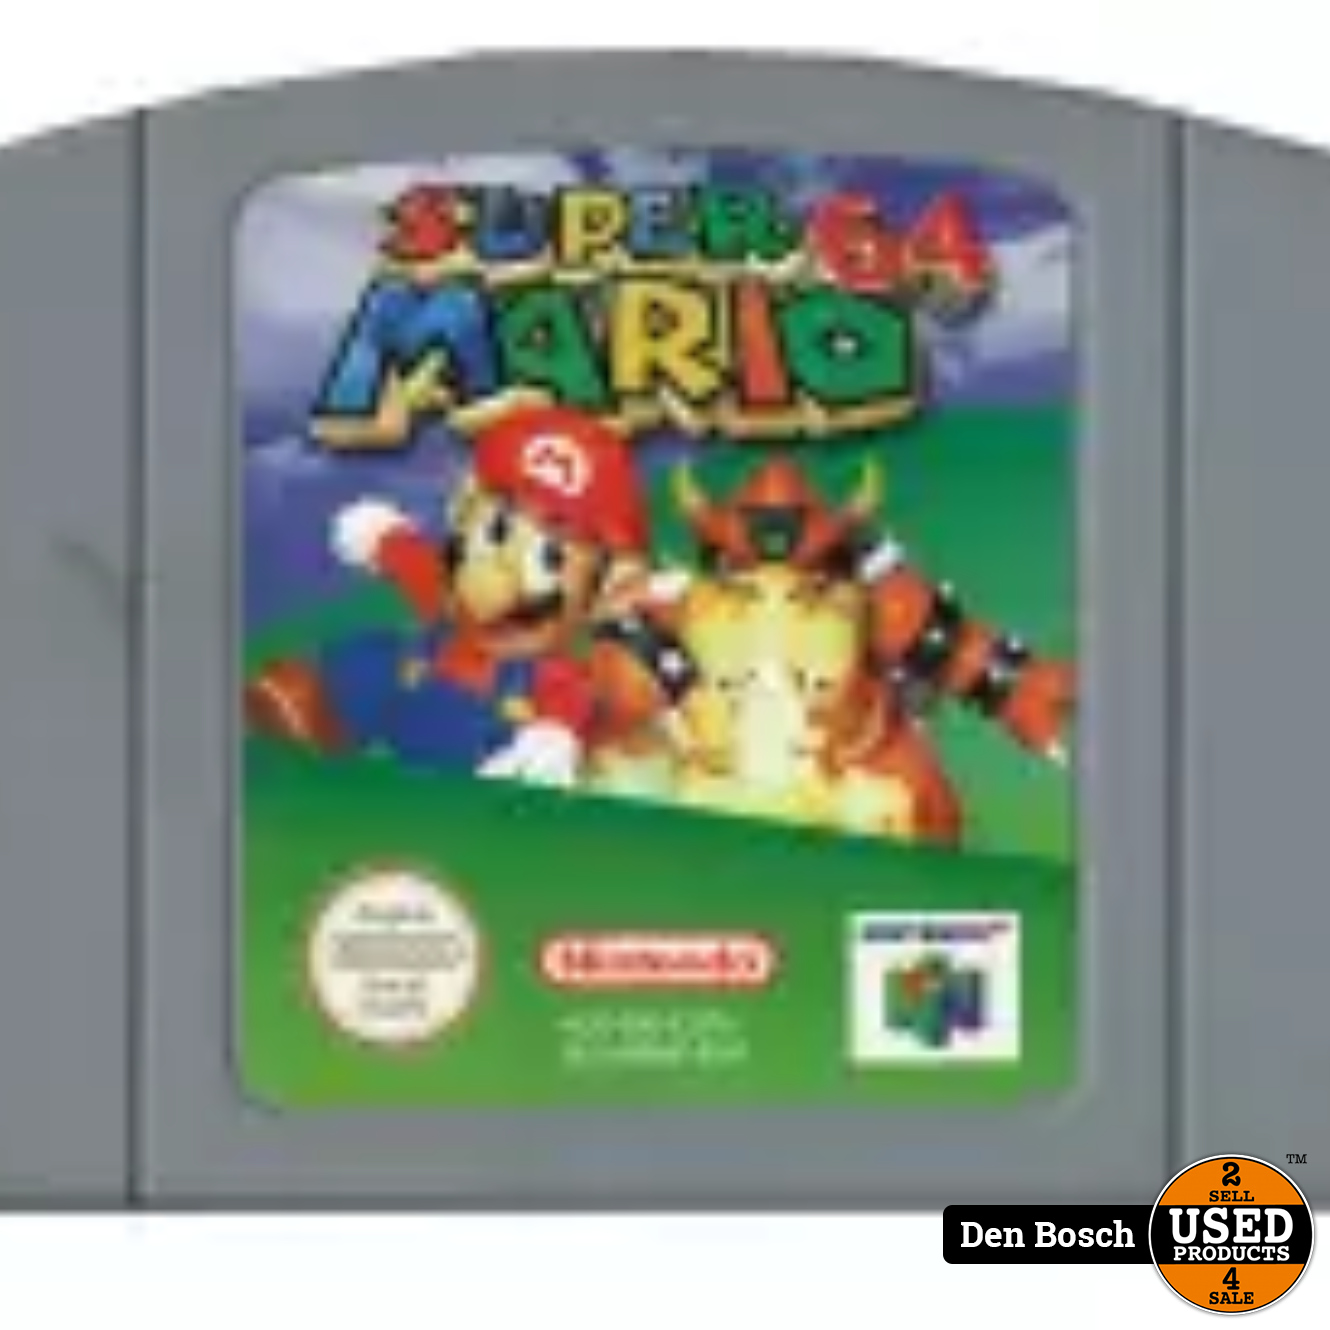 Spijsverteringsorgaan Sluit een verzekering af retort Super Mario 64 (Losse Cartridge) - N64 Game - Used Products Den Bosch